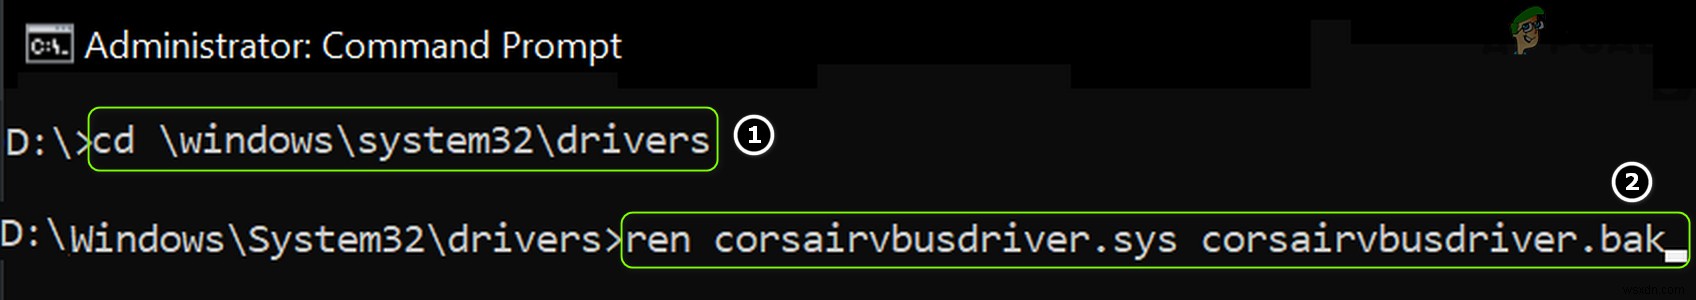 วิธีแก้ไข CorsairVBusDriver.sys Failure BSOD บน Windows 10 